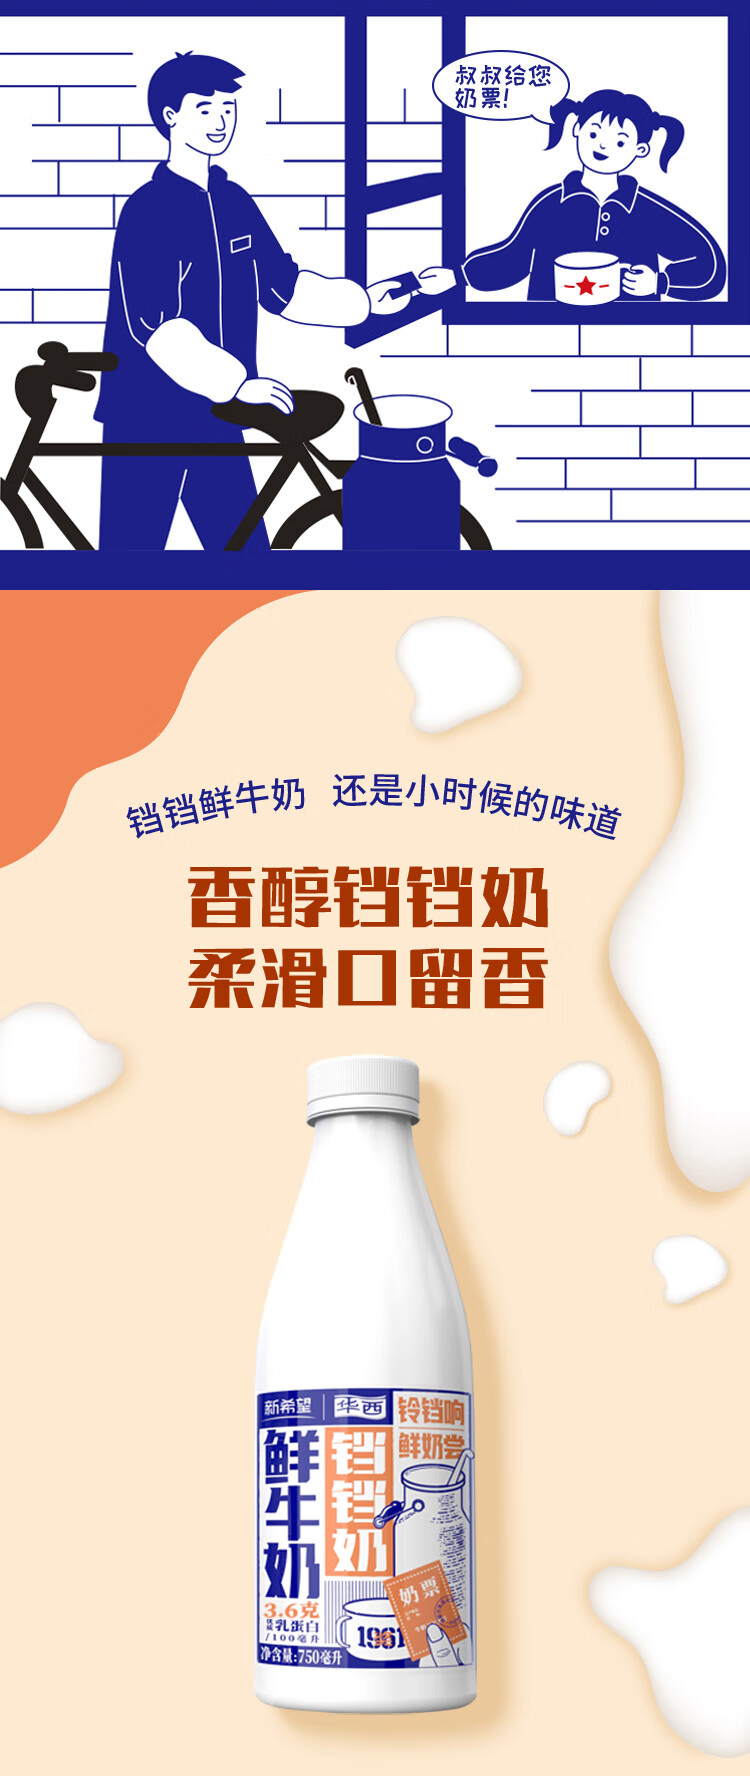 新希望华西瓶装巴氏奶铛铛奶750ml低温鲜牛奶巴氏杀菌鲜奶生鲜牛乳低温奶